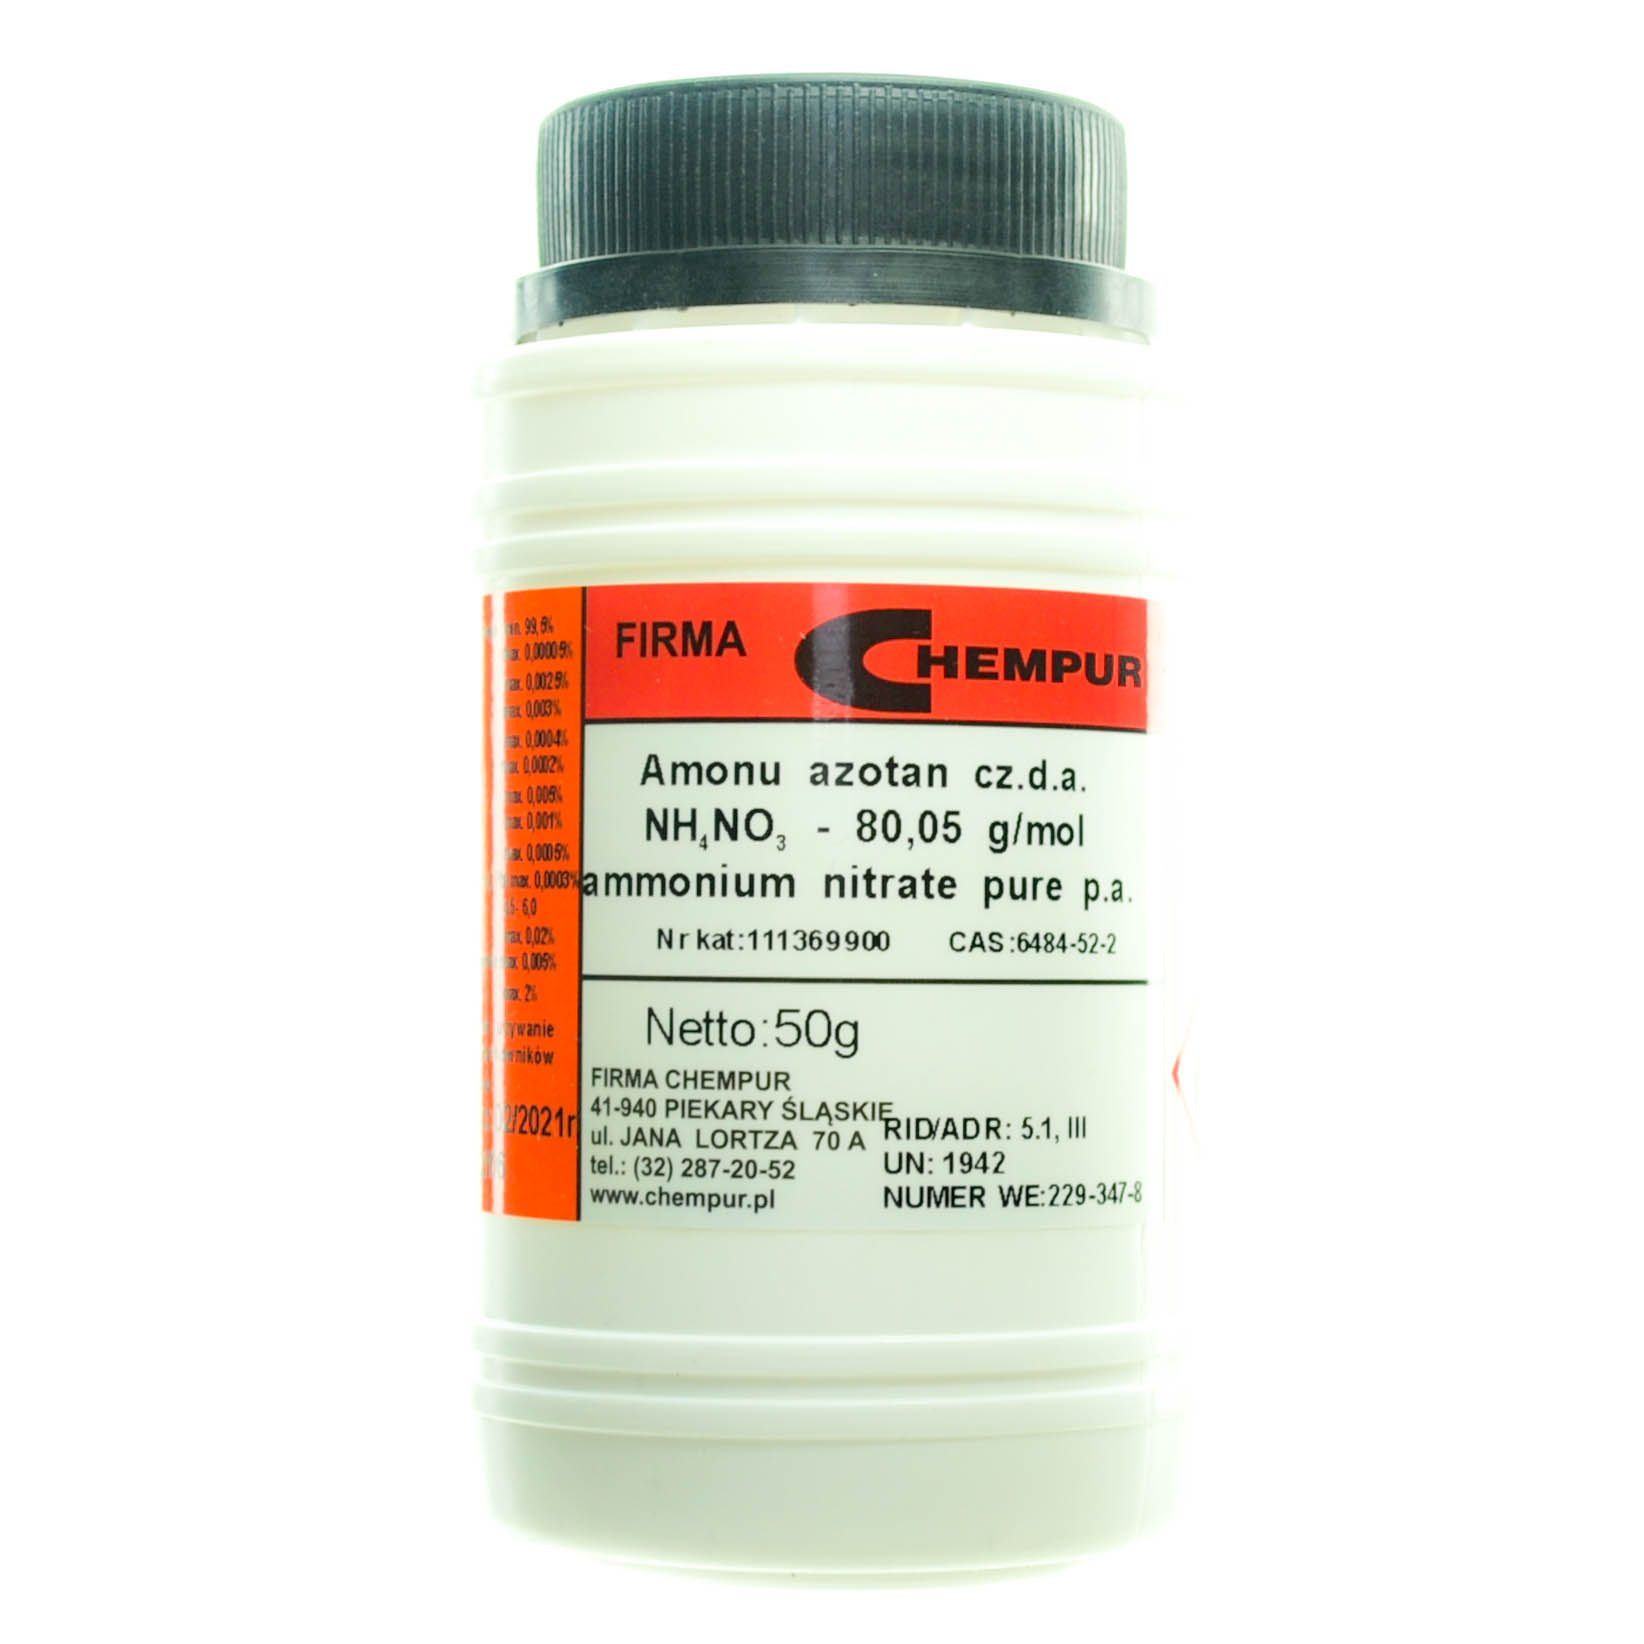 Ammonium nitrate pure p.a.